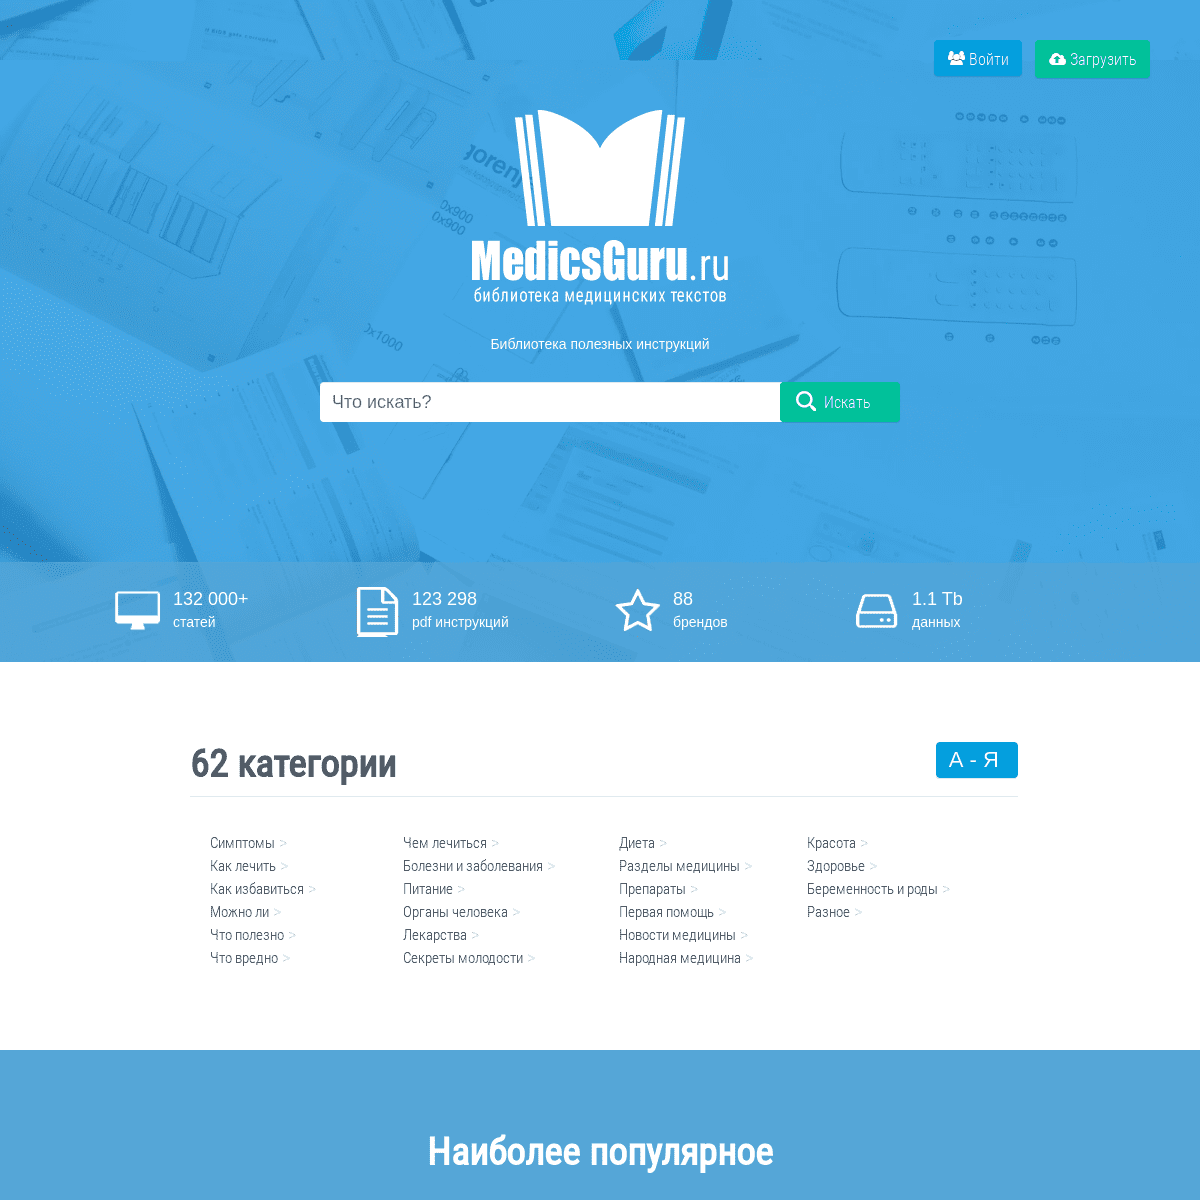 A complete backup of medicsguru.ru